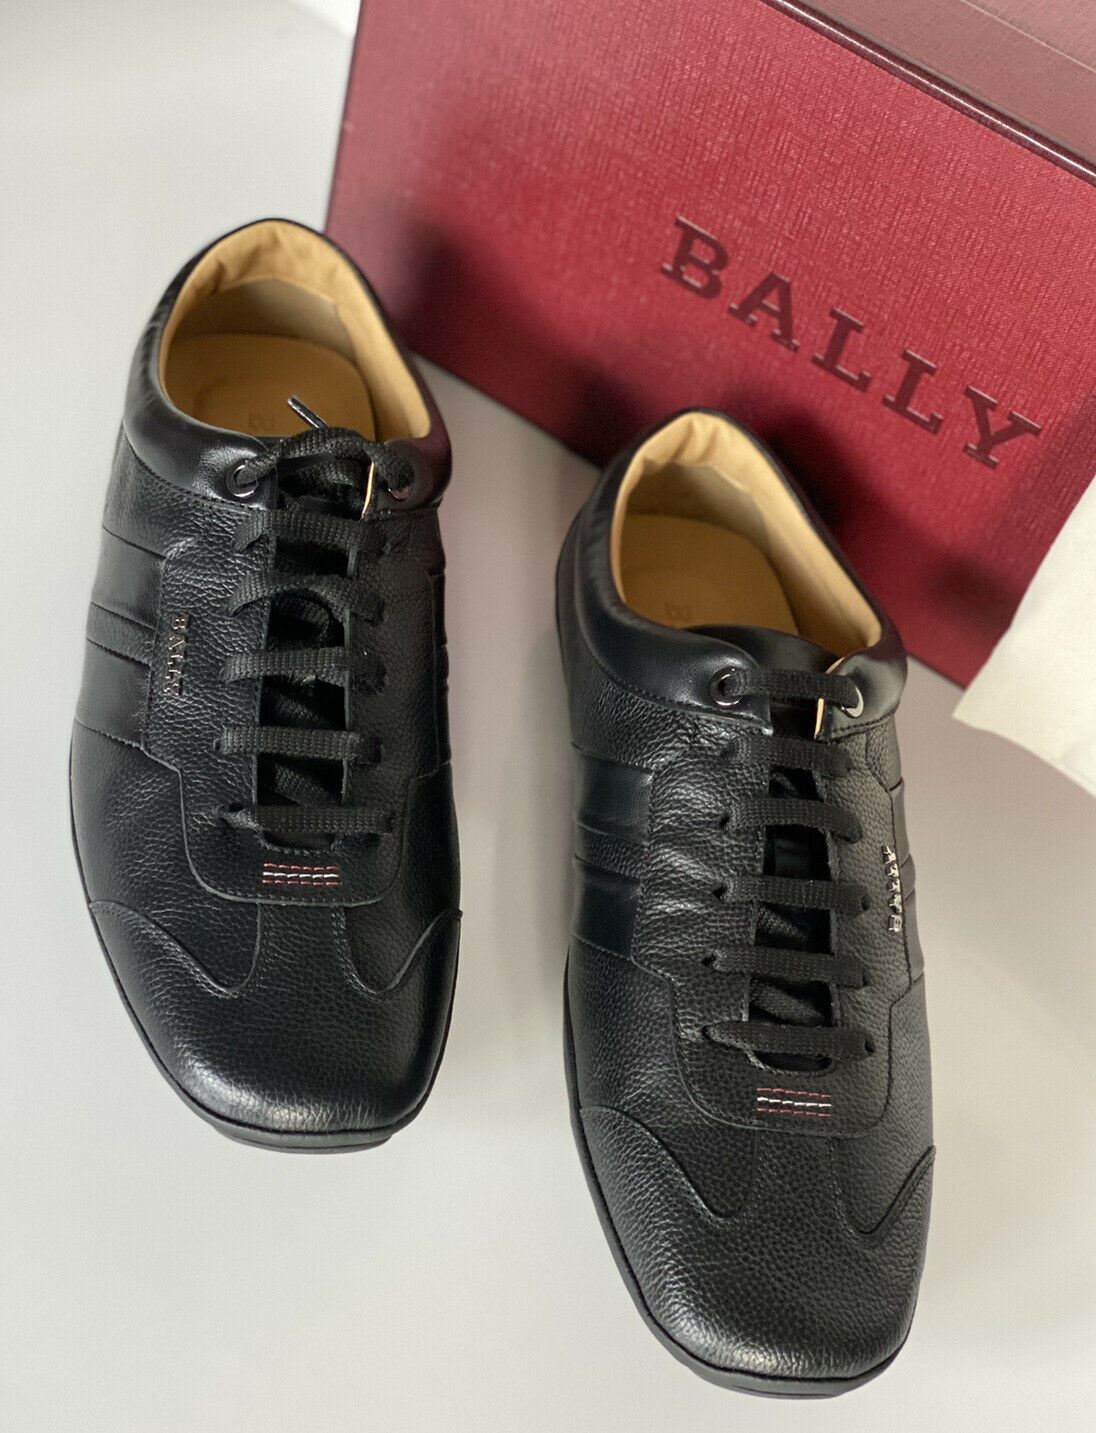 NIB Bally Primer Mens Bovine Embossed Leather Sneakers Black 11 EEE US 6234861